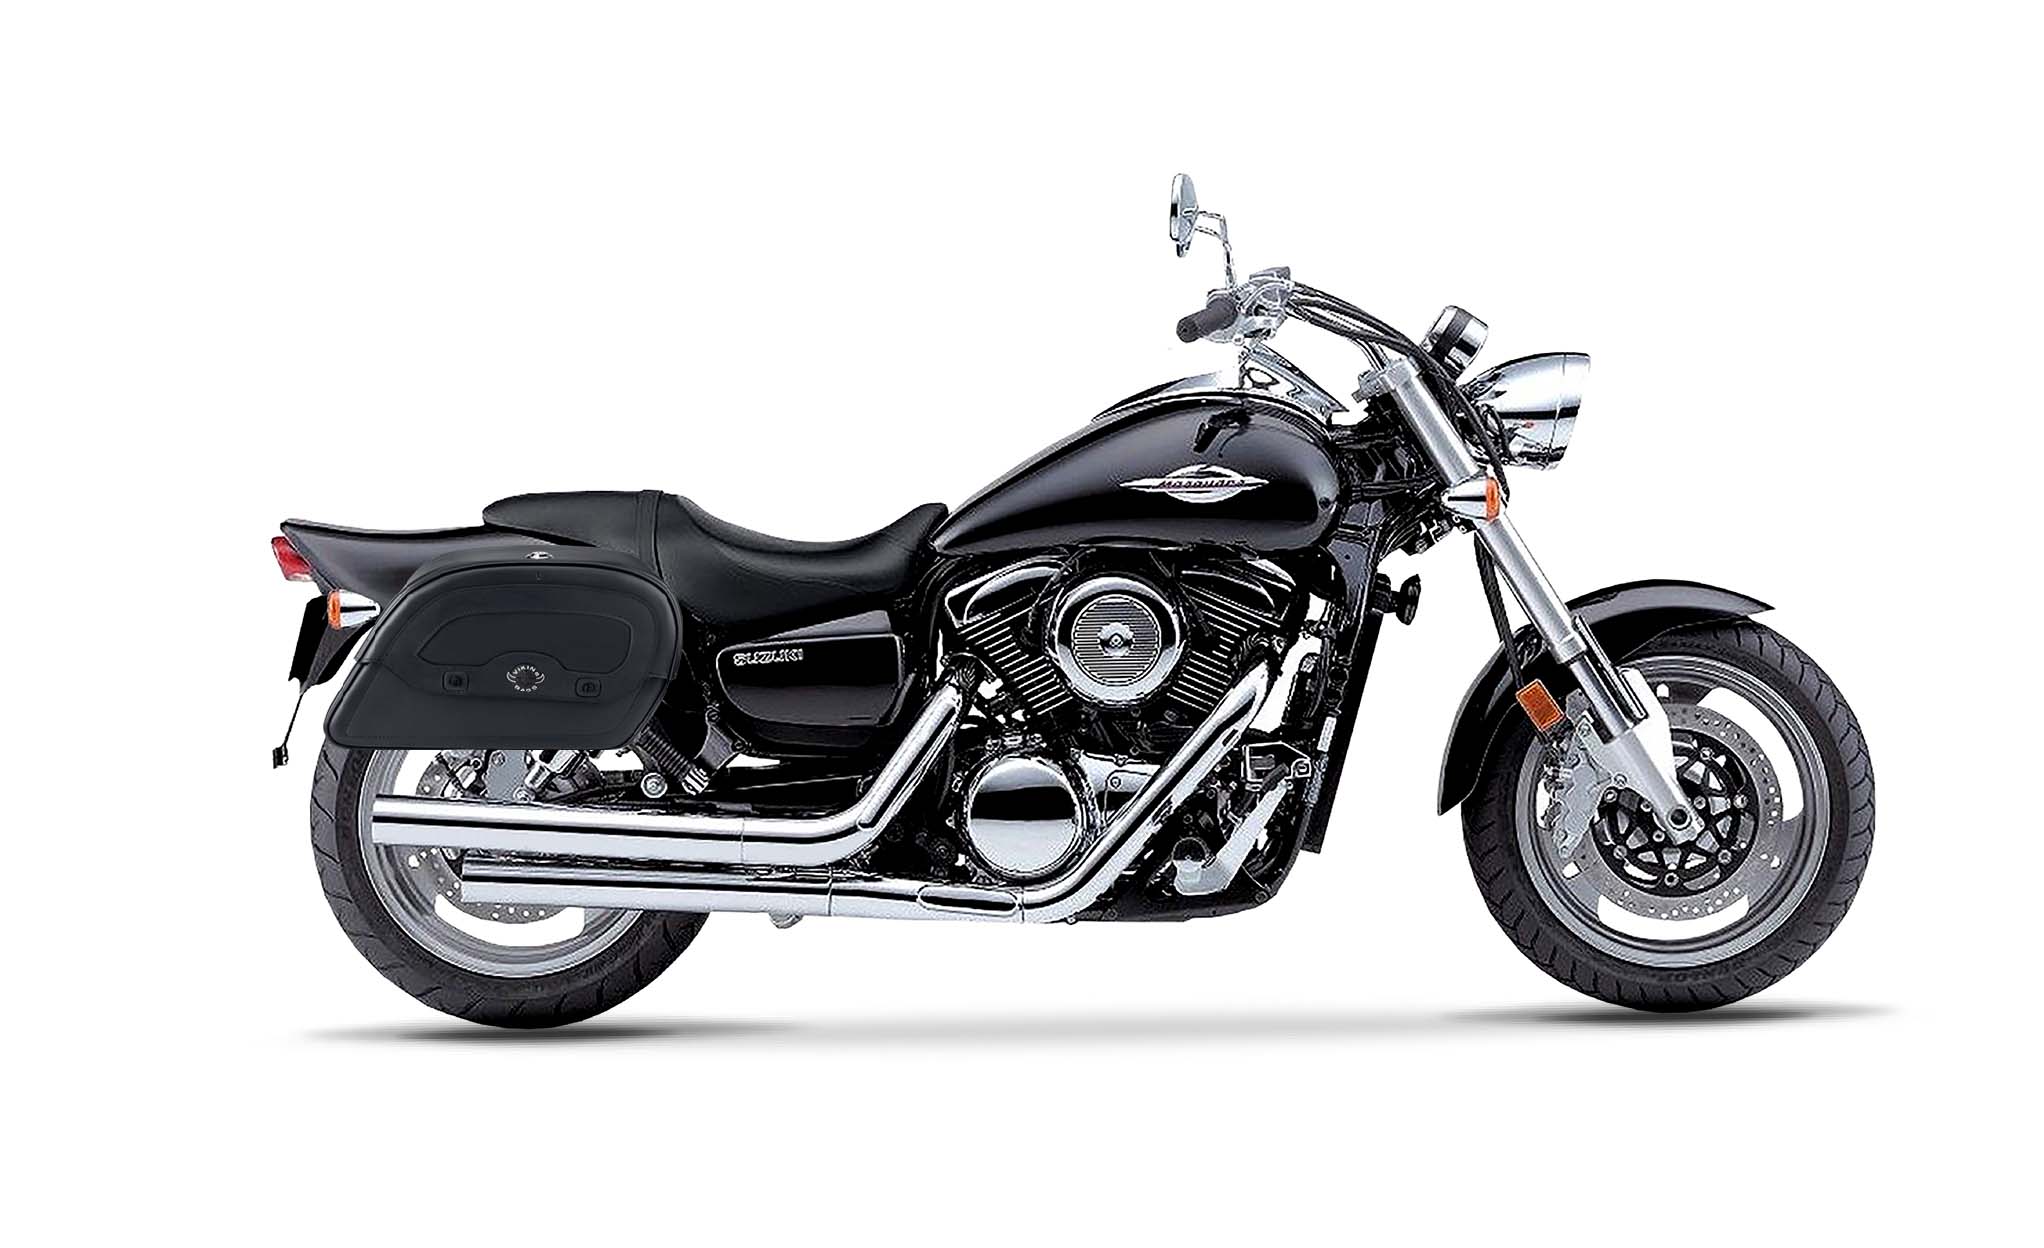 Viking Warrior Medium Suzuki Boulevard M95 Vz1600 Leather Motorcycle Saddlebags on Bike Photo @expand